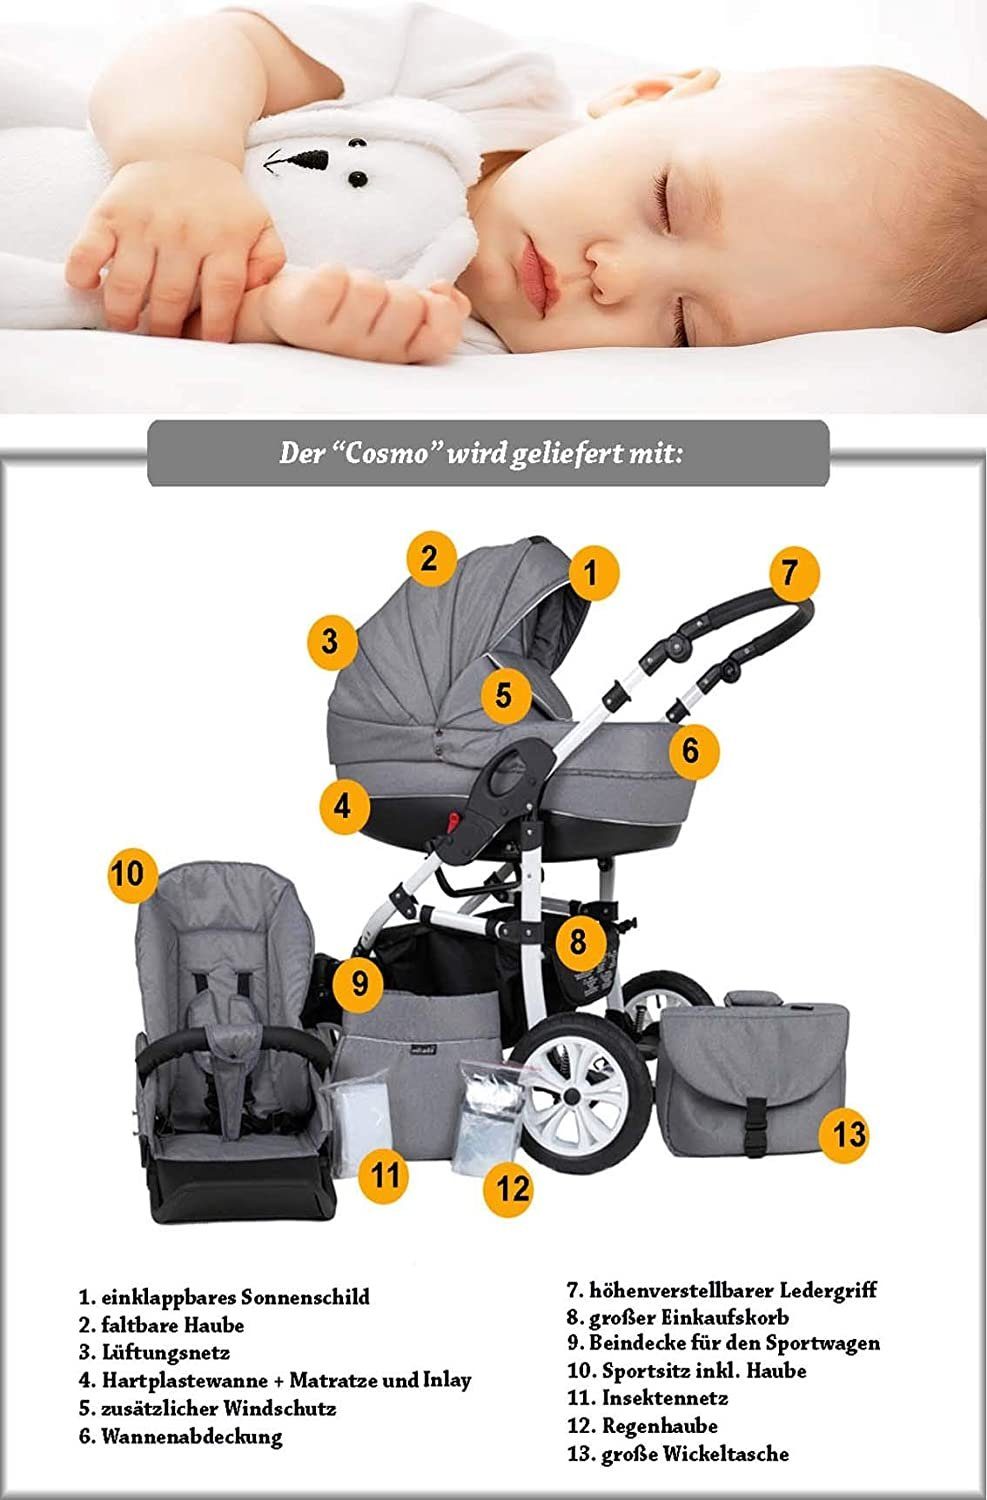 babies-on-wheels Kombi-Kinderwagen Cosmo ECO 1 in 16 Farben Lila-Weiß in - Kinderwagen-Set Teile 13 - Kunstleder 2